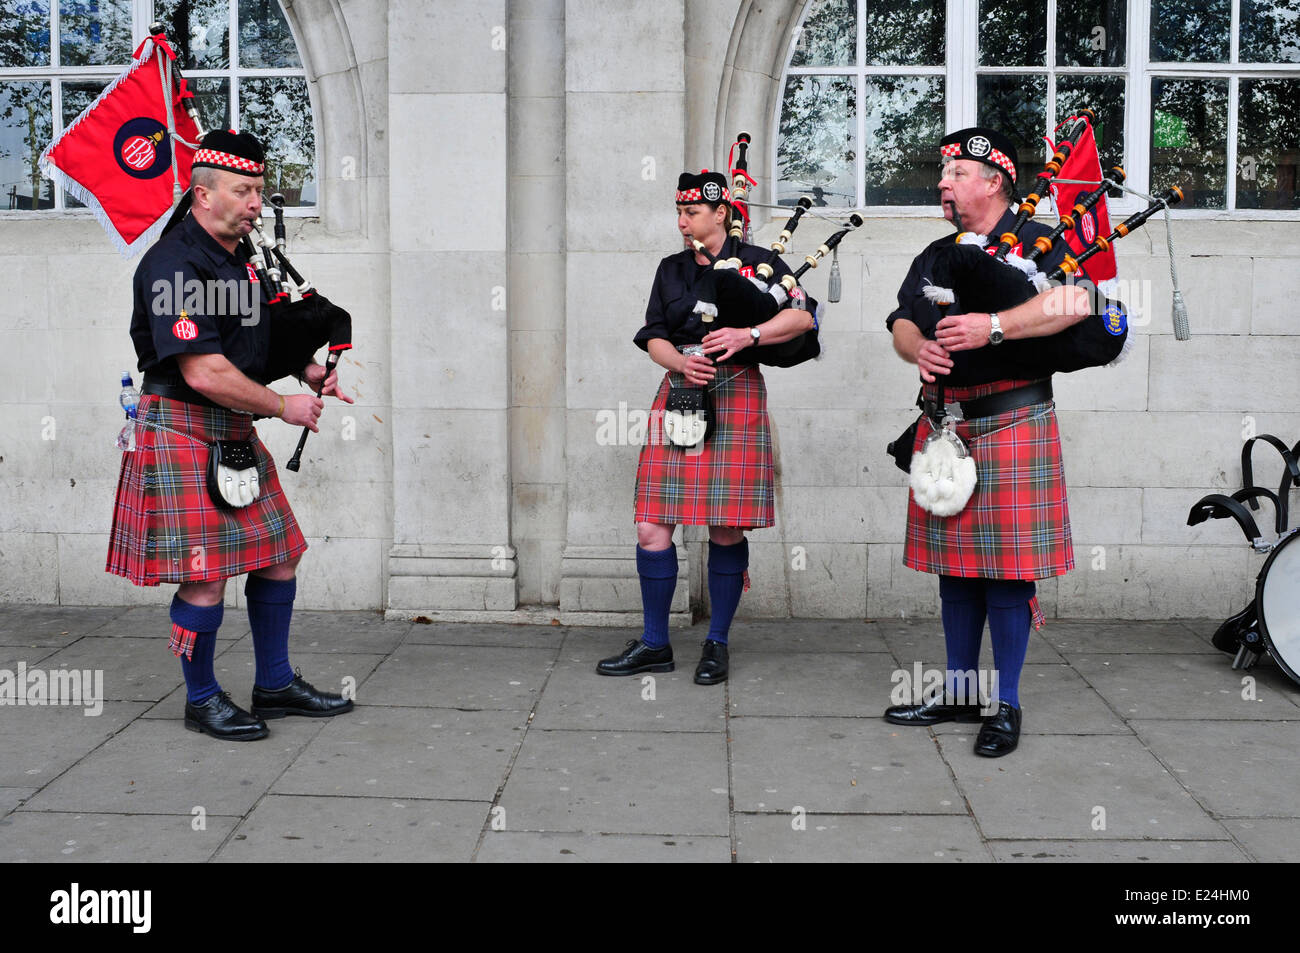 Tres miembros del sindicato de bomberos de Escocia gaitas jugar durante una  protesta contra los recortes, Londres, Reino Unido Fotografía de stock -  Alamy